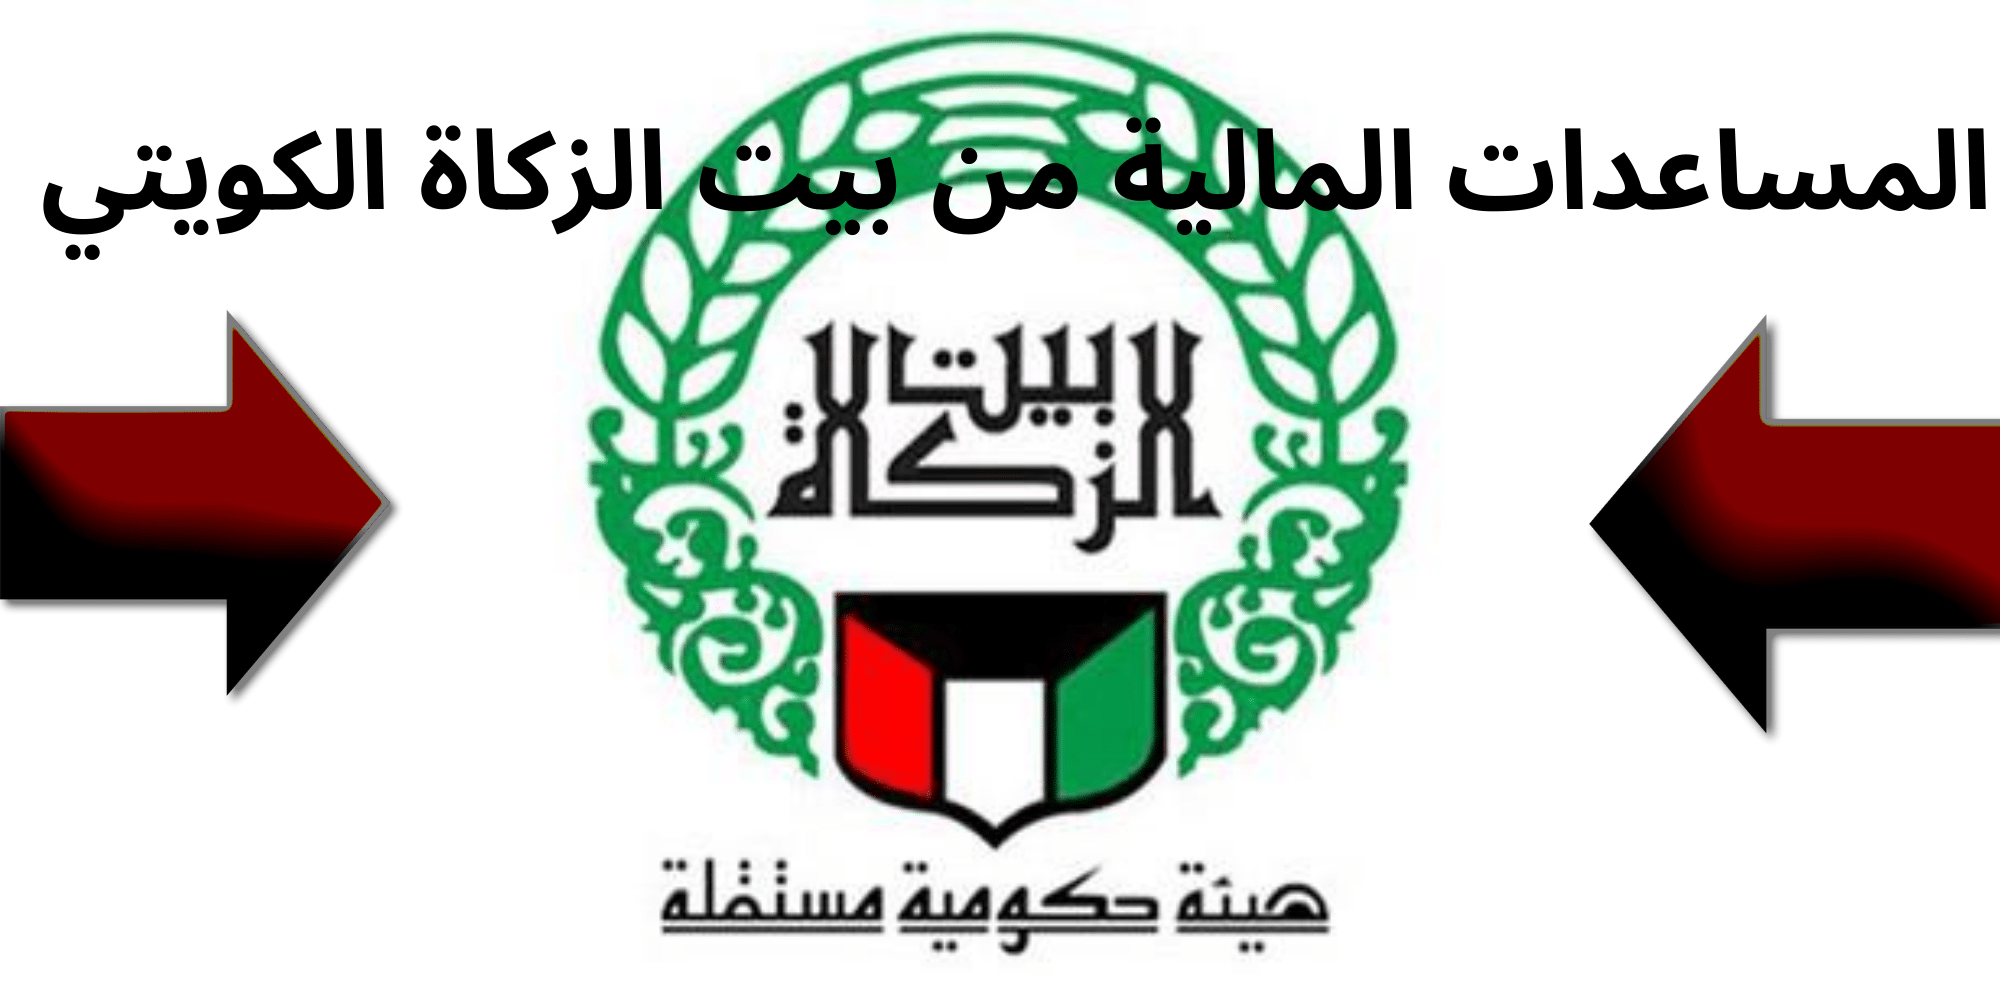 الآن يمكن للمواطن الكويتي طلب مساعدة مالية من بيت الزكاة